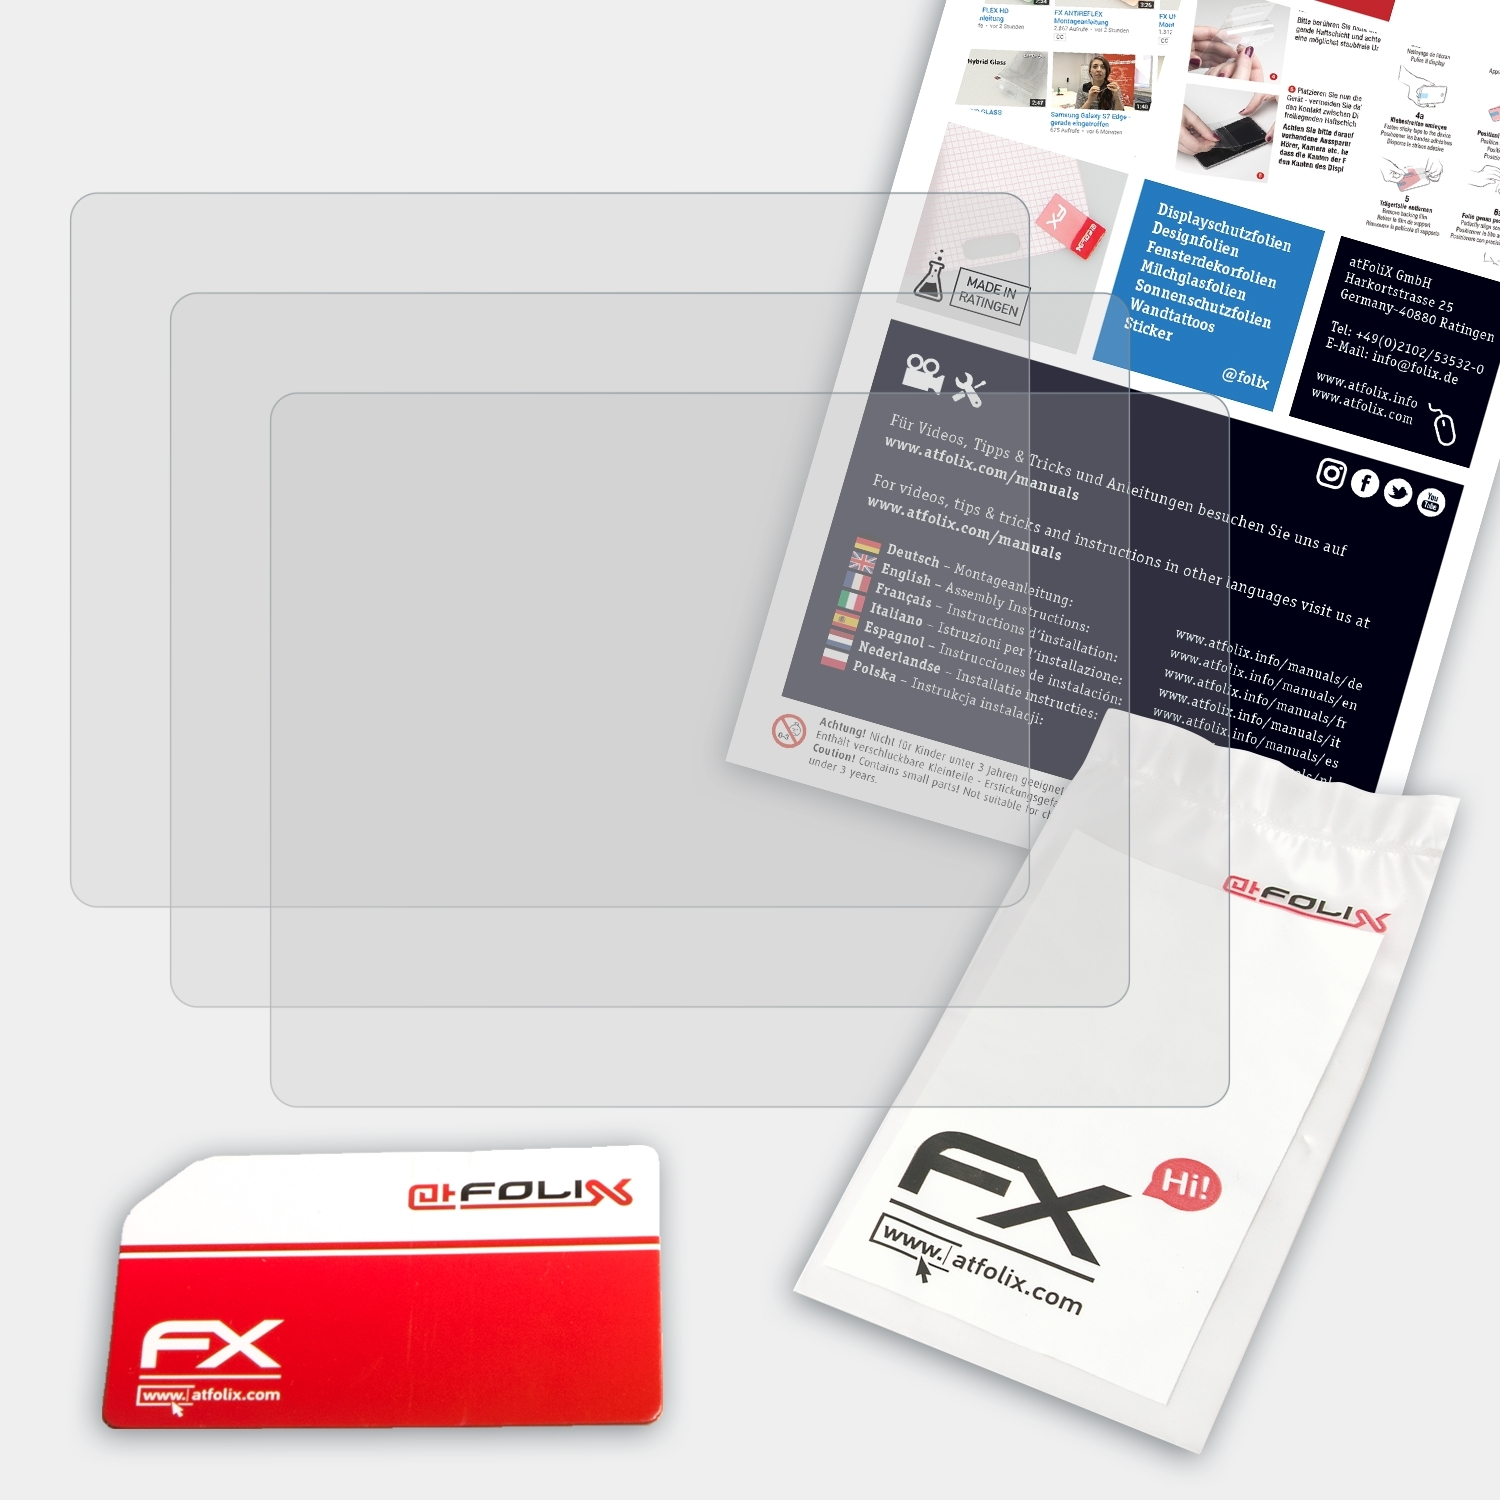 ATFOLIX 3x FX-Antireflex Displayschutz(für Garmin nüvi 205)